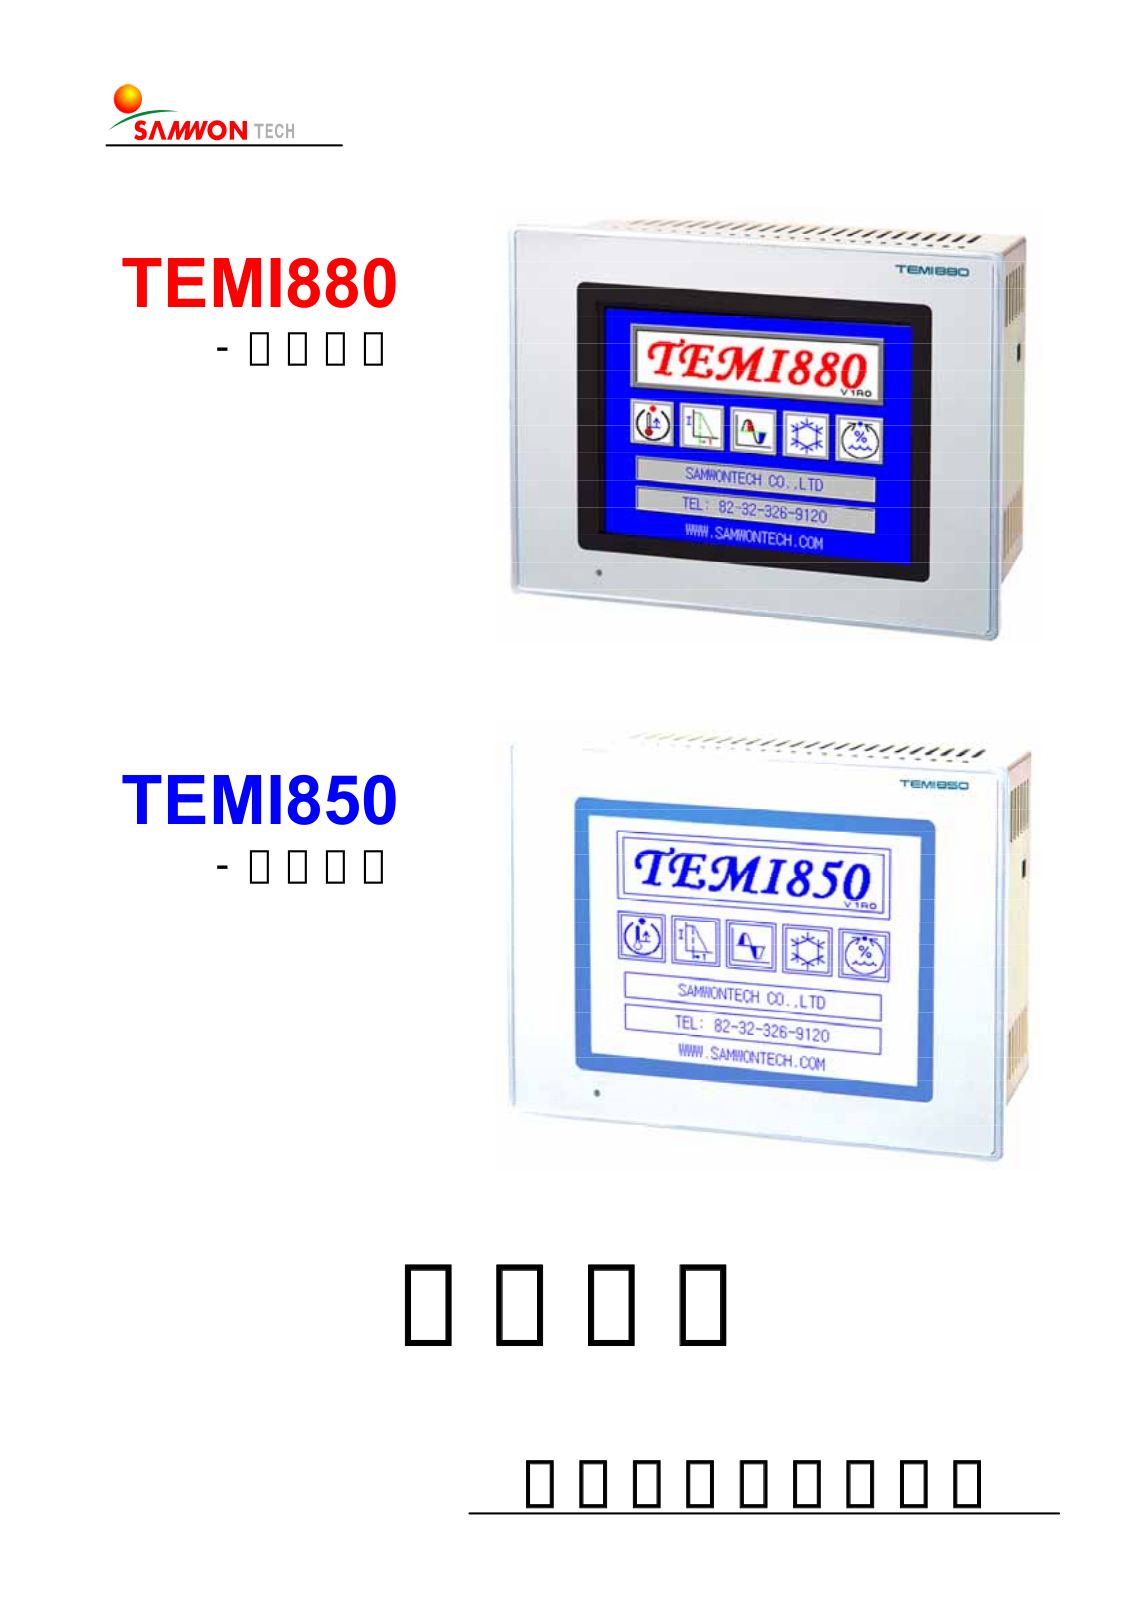 SAMWON TECH TEMI880, TEMI850 User Manual